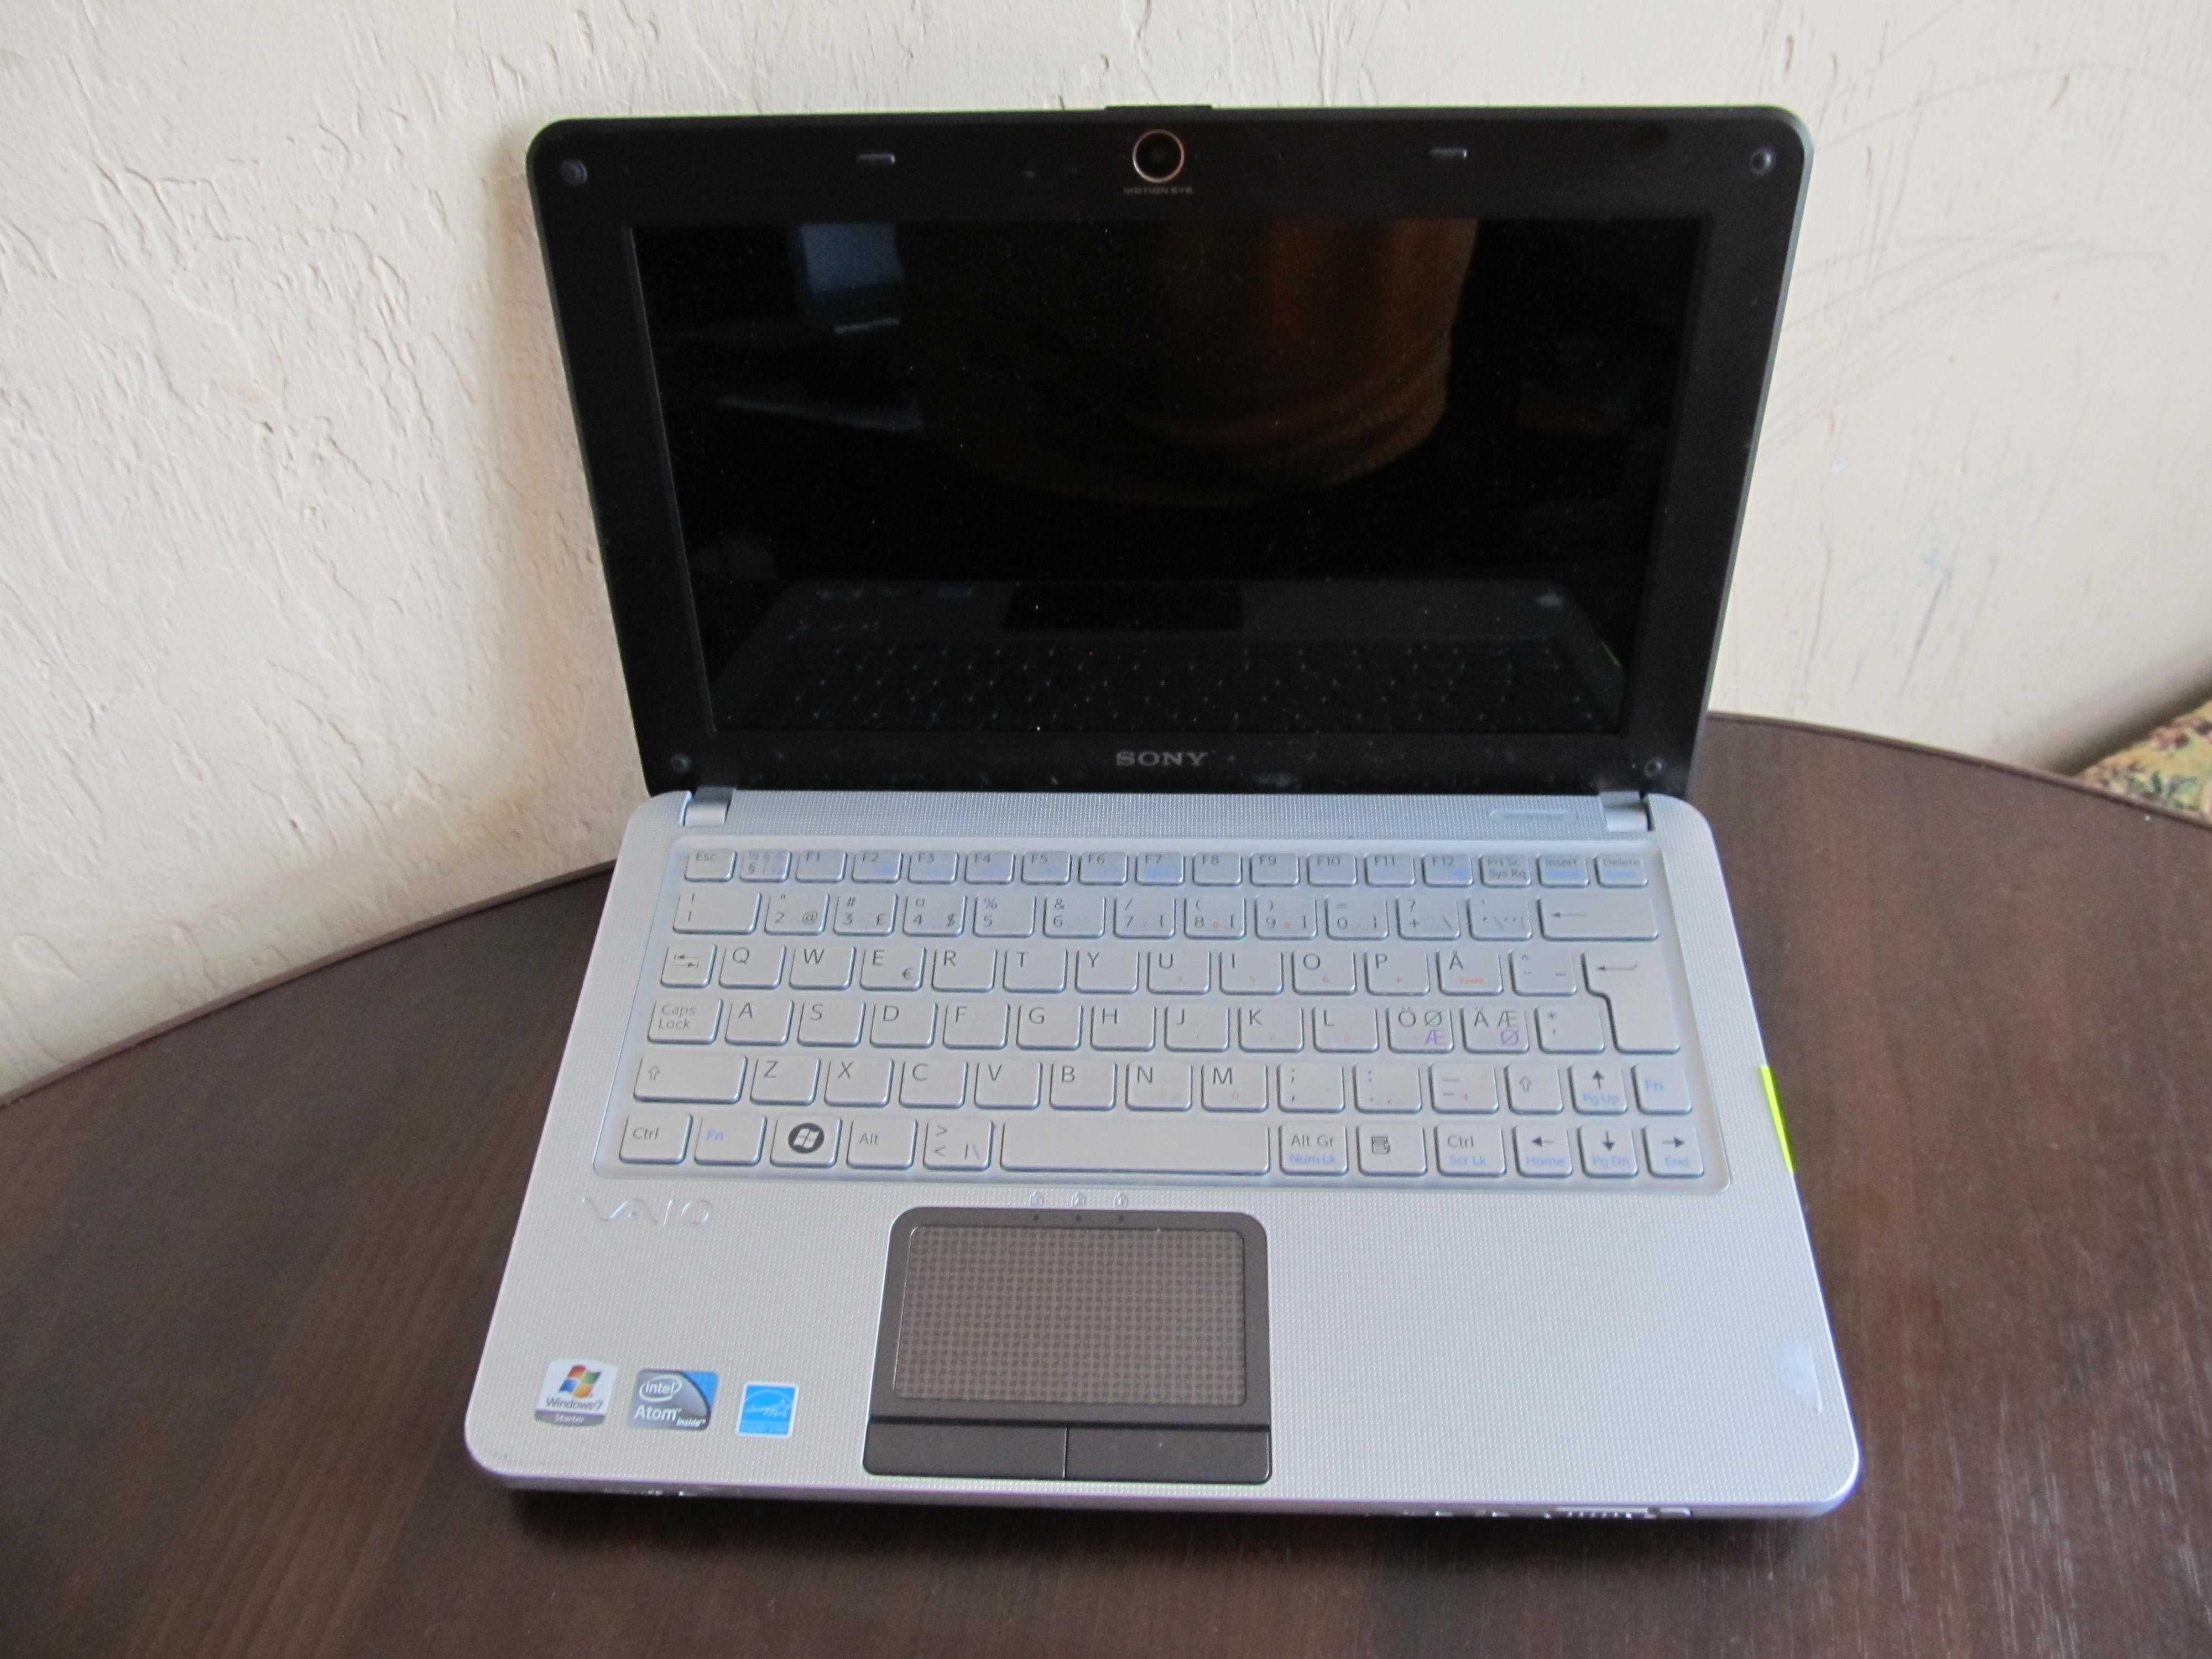 Ноутбук Sony нетбук 10.1 Intel Atom N280/2Gb/HDD 250 Gb Лептоп Laptop